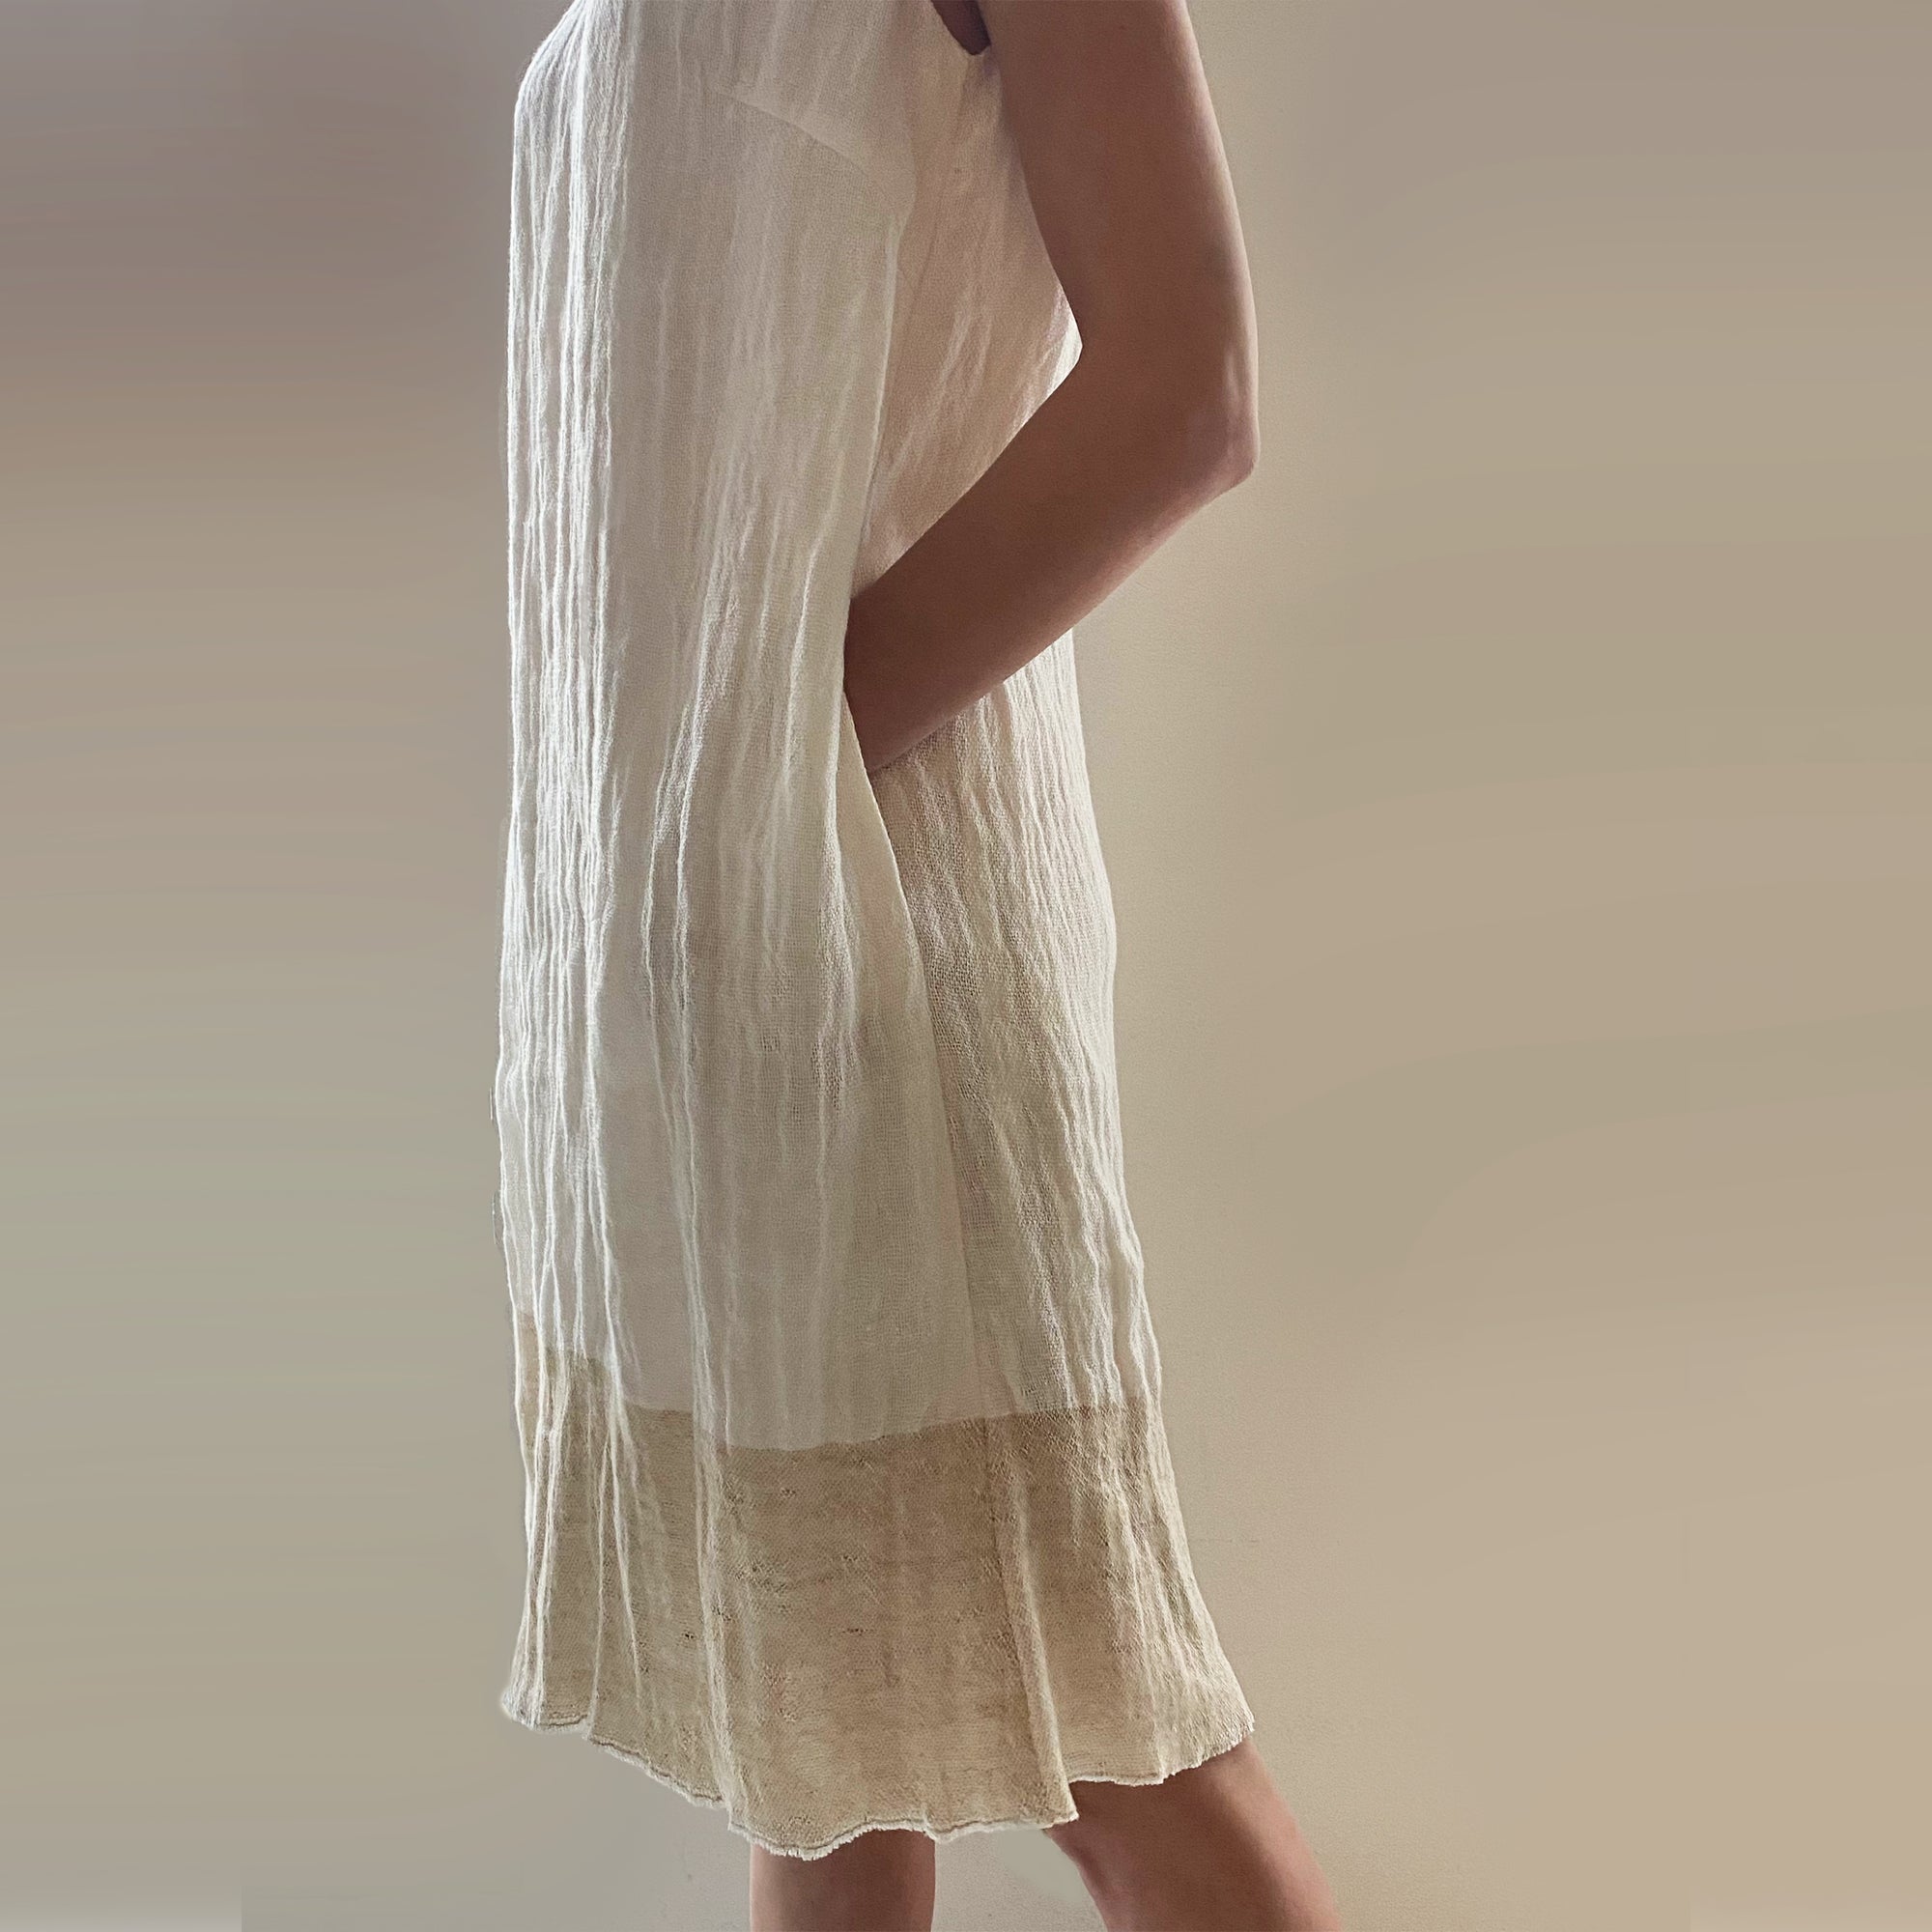 Linen Summer Dress "Jura" in white